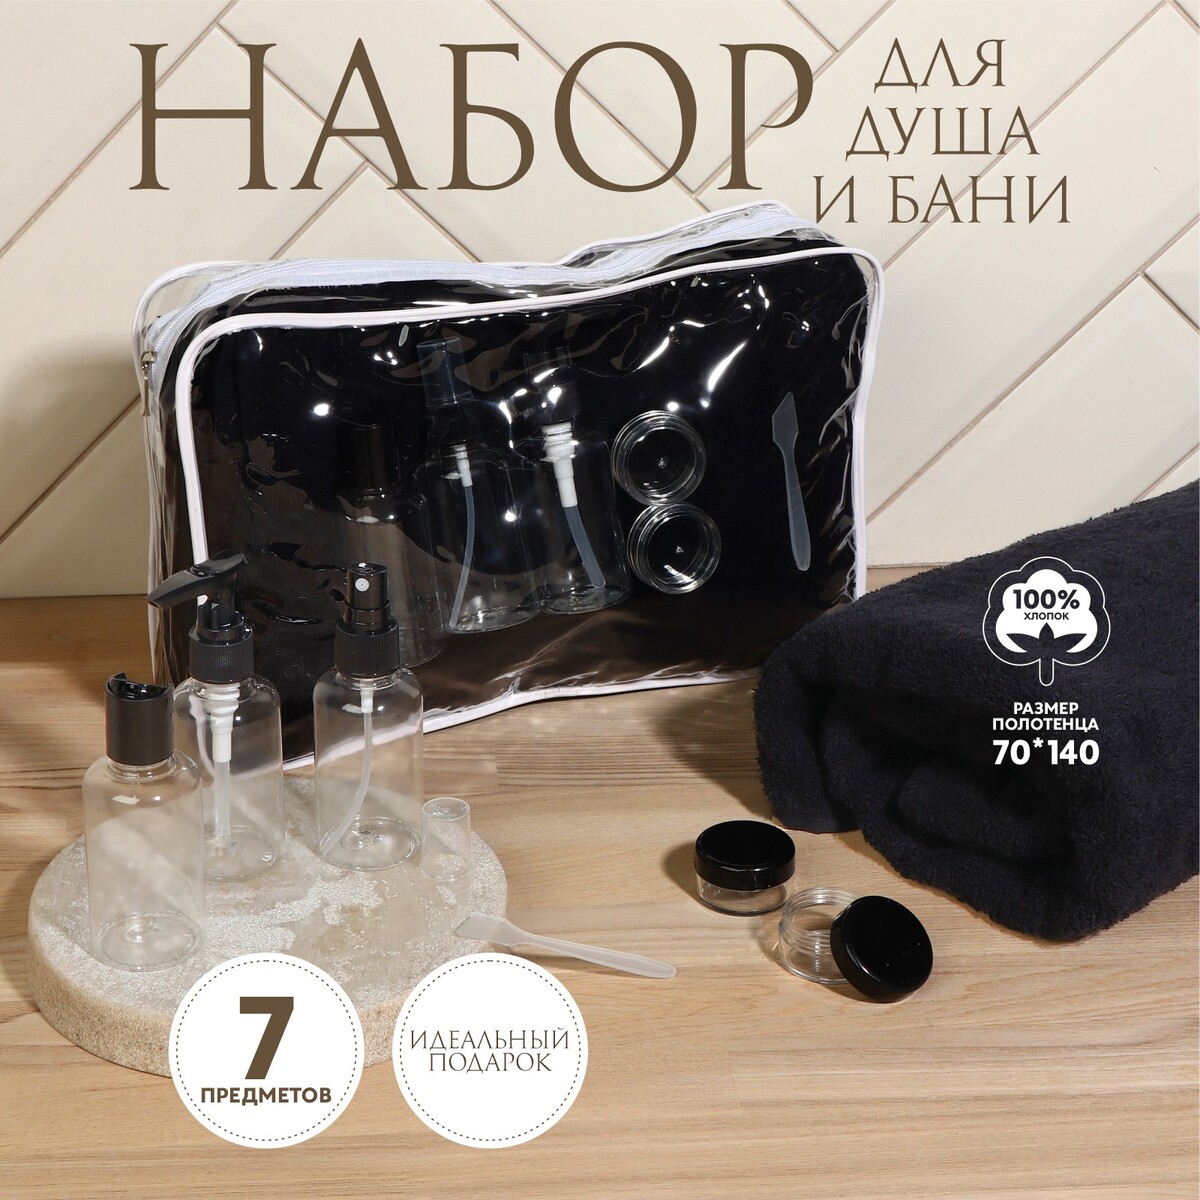 Набор банный, в косметичке, 7 предметов (полотенце 70 × 140 см, бутылочки 3 шт, баночки 2 шт, лопатка), цвет черный